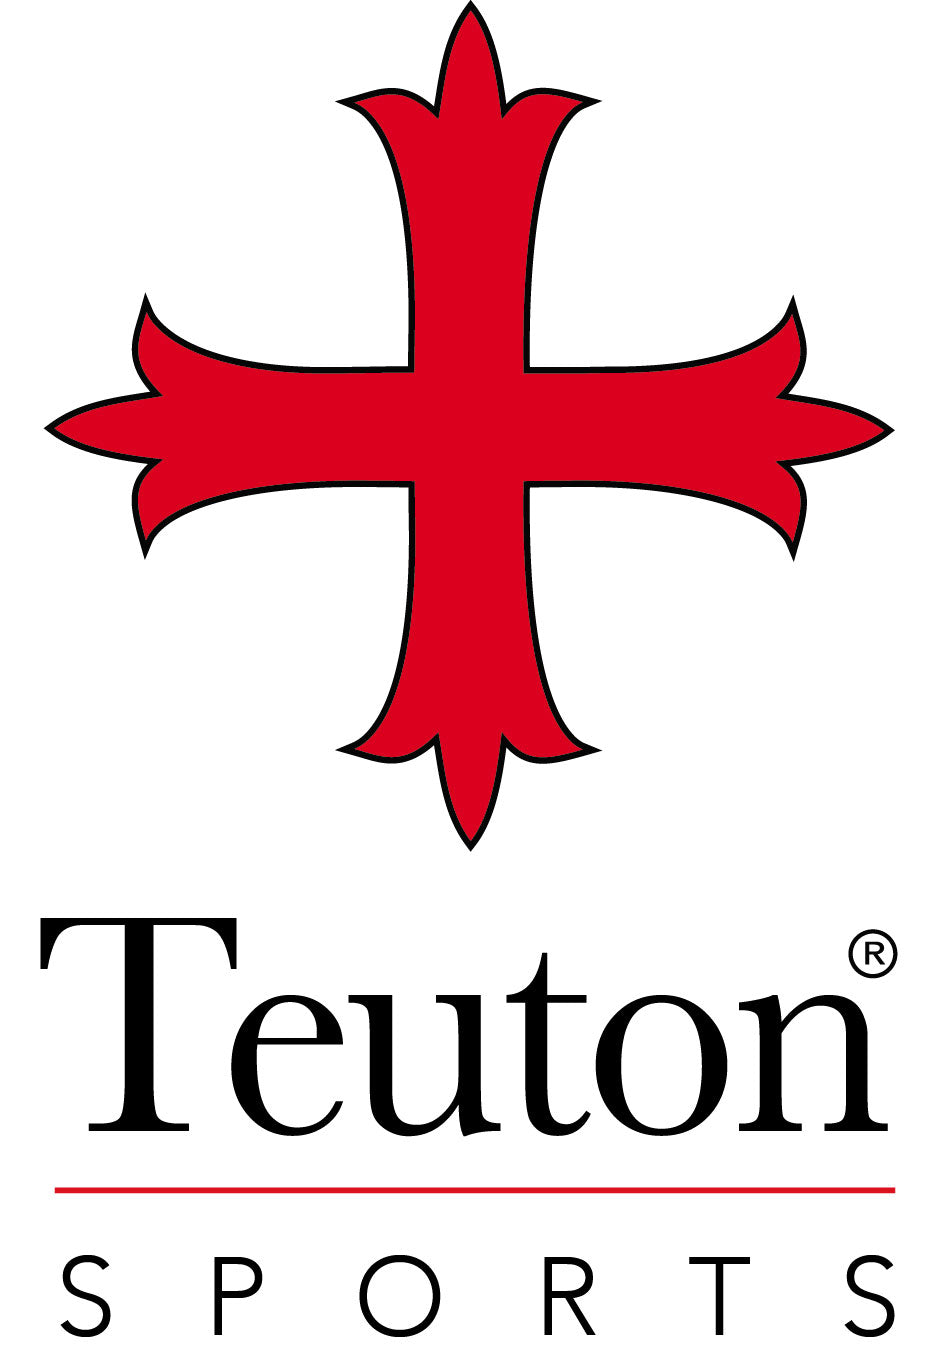 Teuton Sports